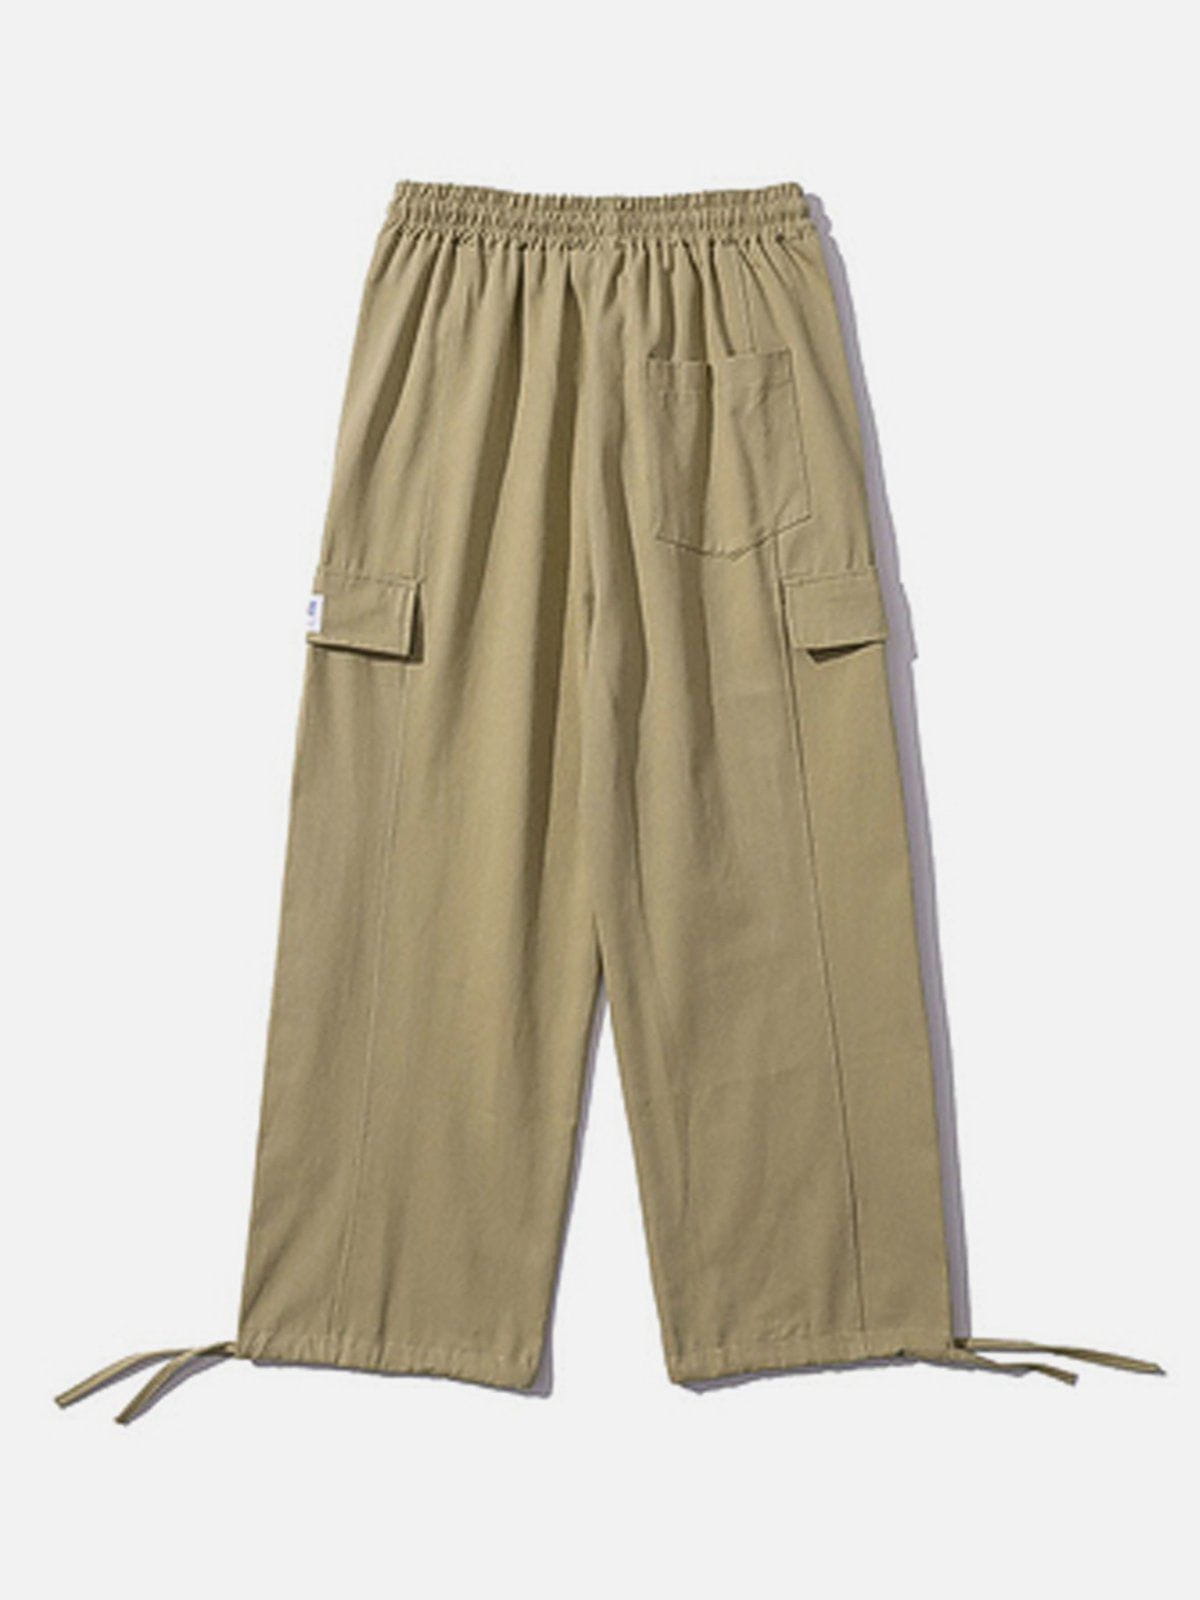 Sneakerland® - Large Pocket Drawstring Cargo Pants